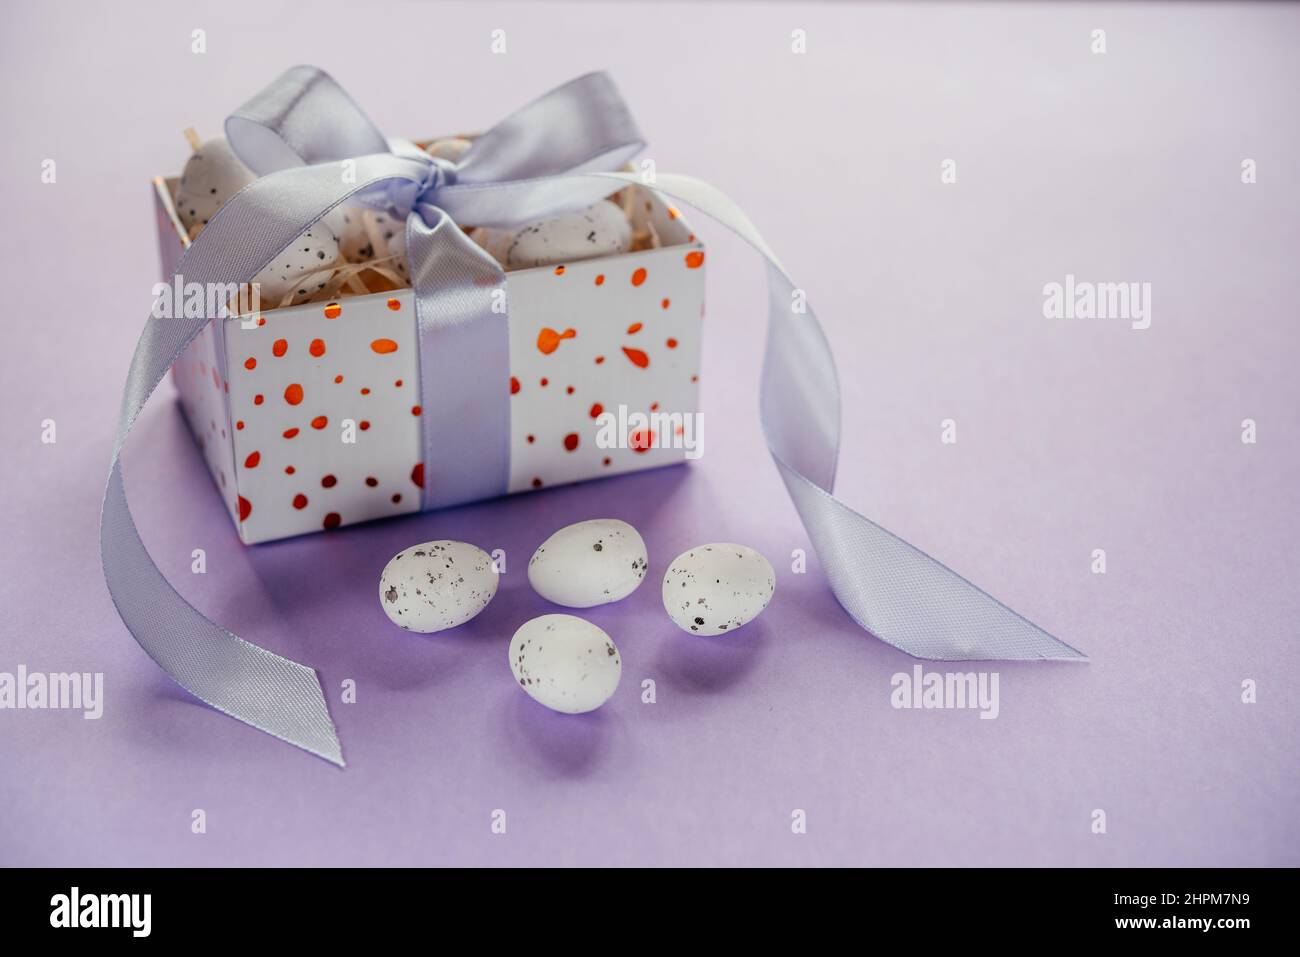 Pasqua creativa layout con uova di Pasqua in una confezione regalo con nastri di lavanda blush su sfondo viola chiaro Foto Stock